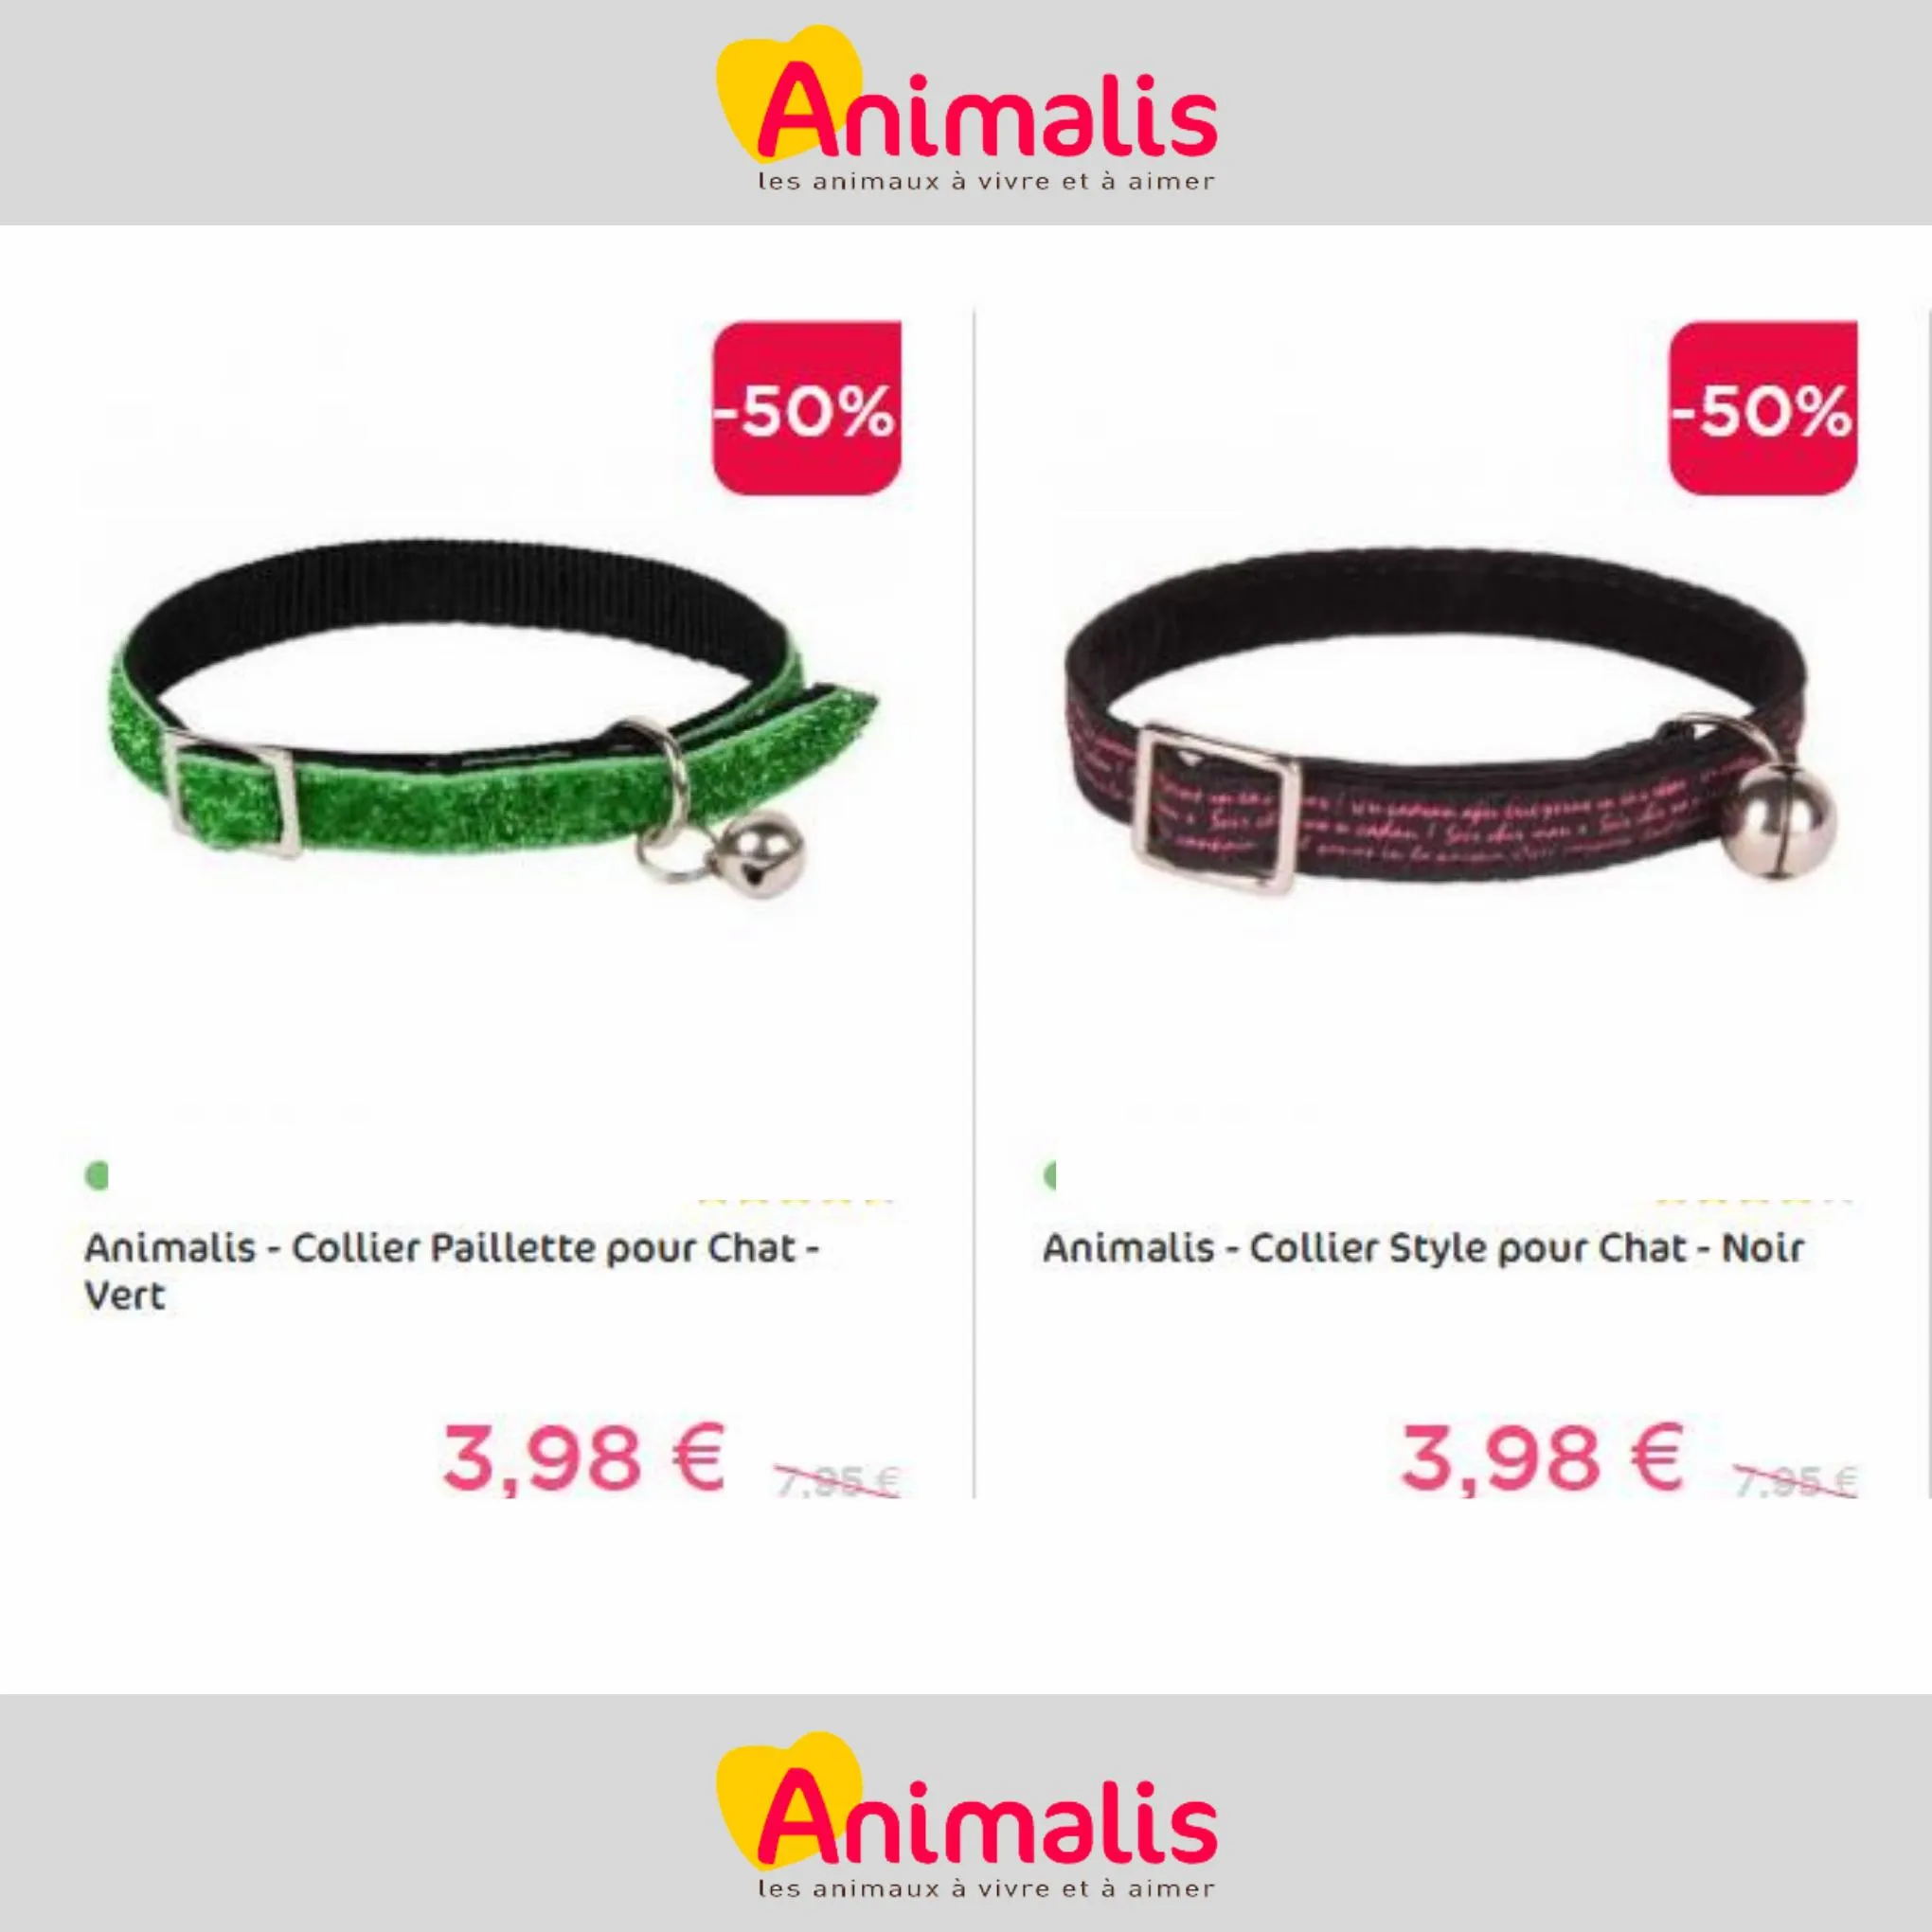 Catalogue Super offres de -50% pour votre animal de compagnie, page 00006